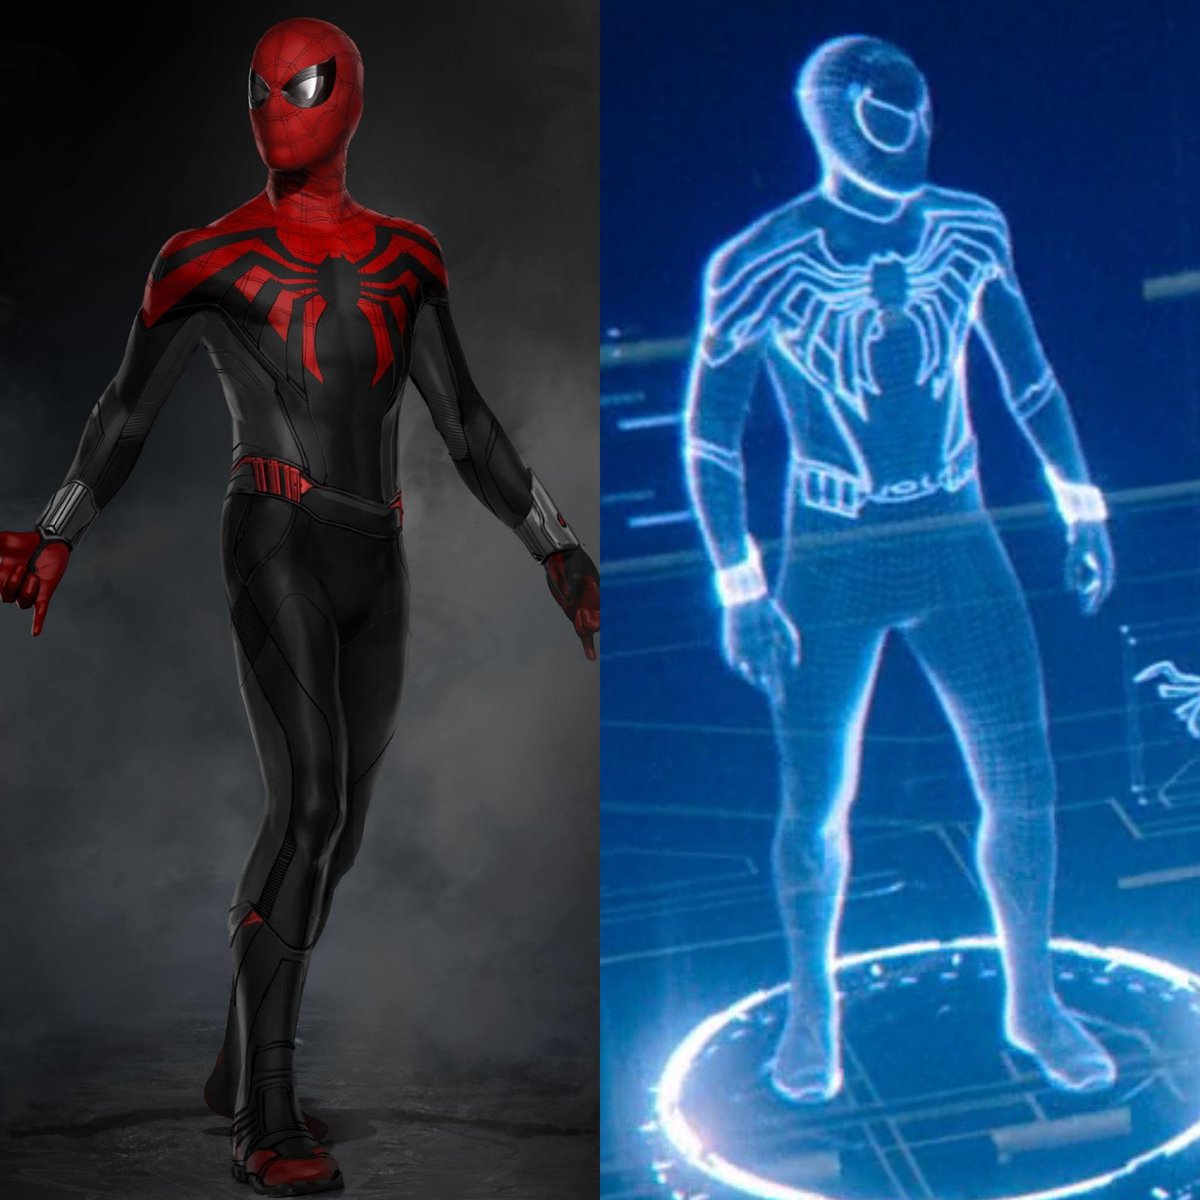 Mcu Fan Life Marvelブログ Tk Mcu小ネタ 136 映画 スパイダーマン Ffh でピーターが新 スーツを開発するシーンでホログラム上に写っているスーツは原作コミックやコンセプトアートに近いデザインになっています 続編 スパイダーマン ノー